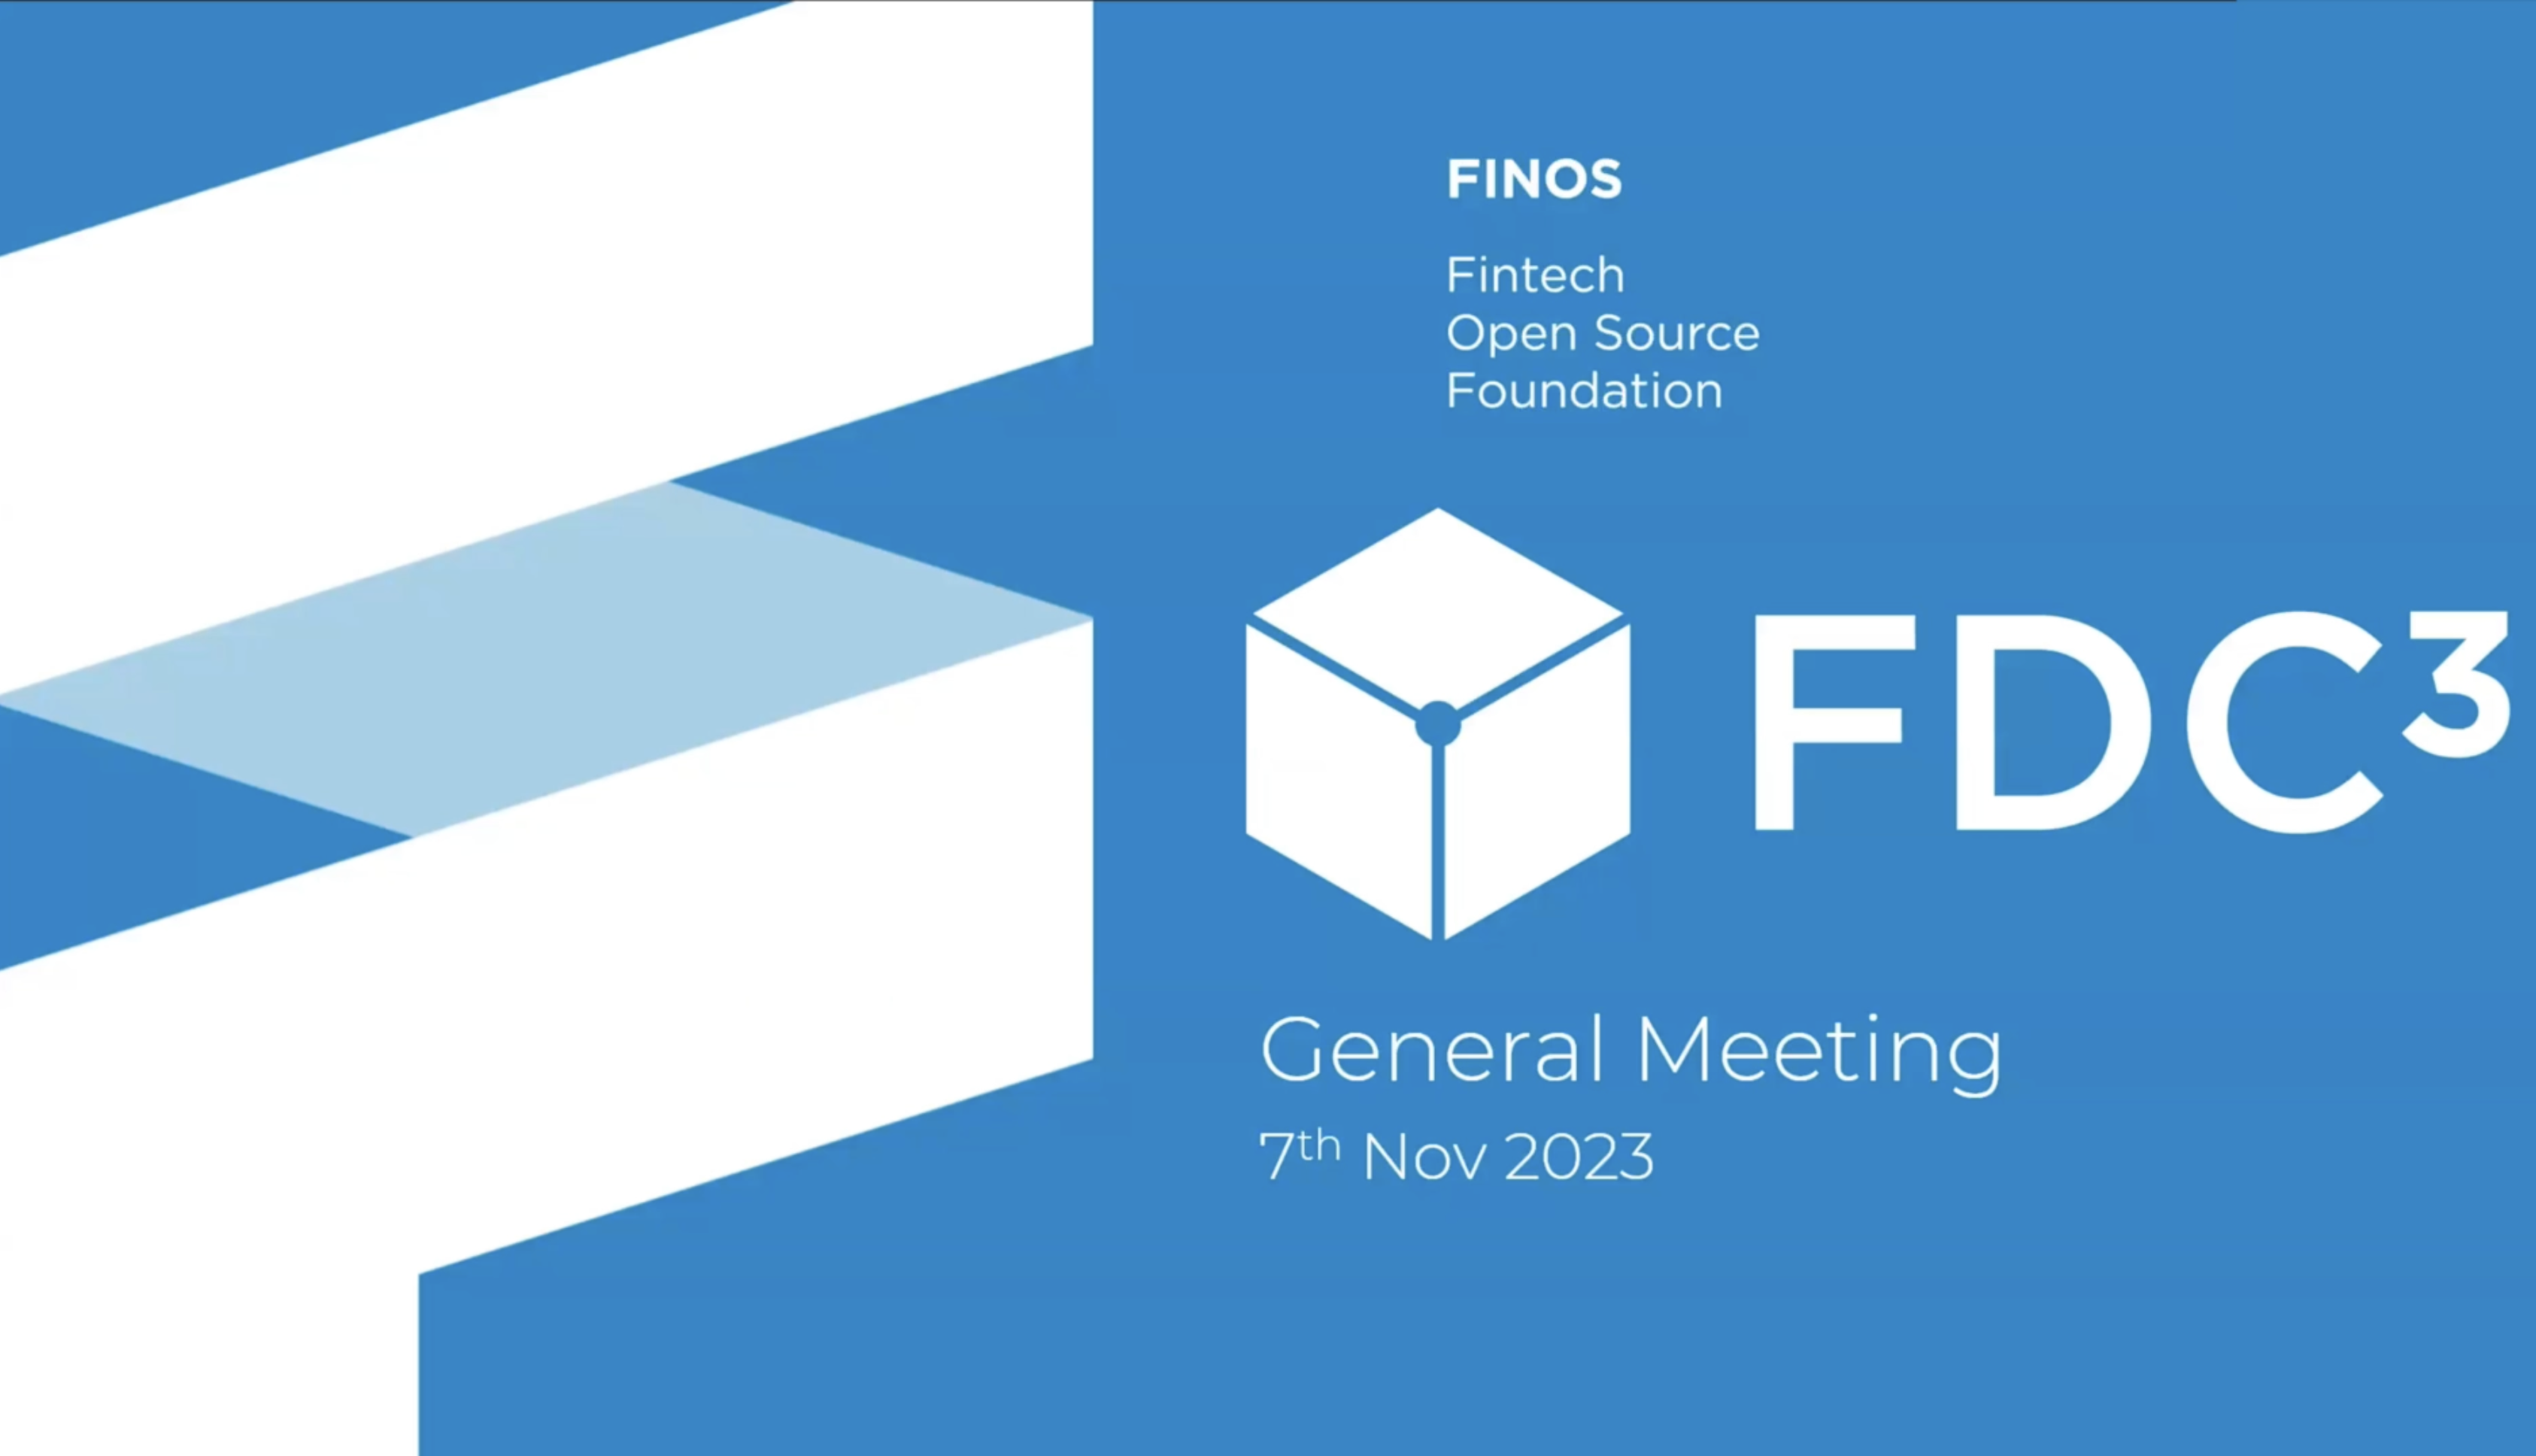 FDC3 General Meeting 7th Nov 2023